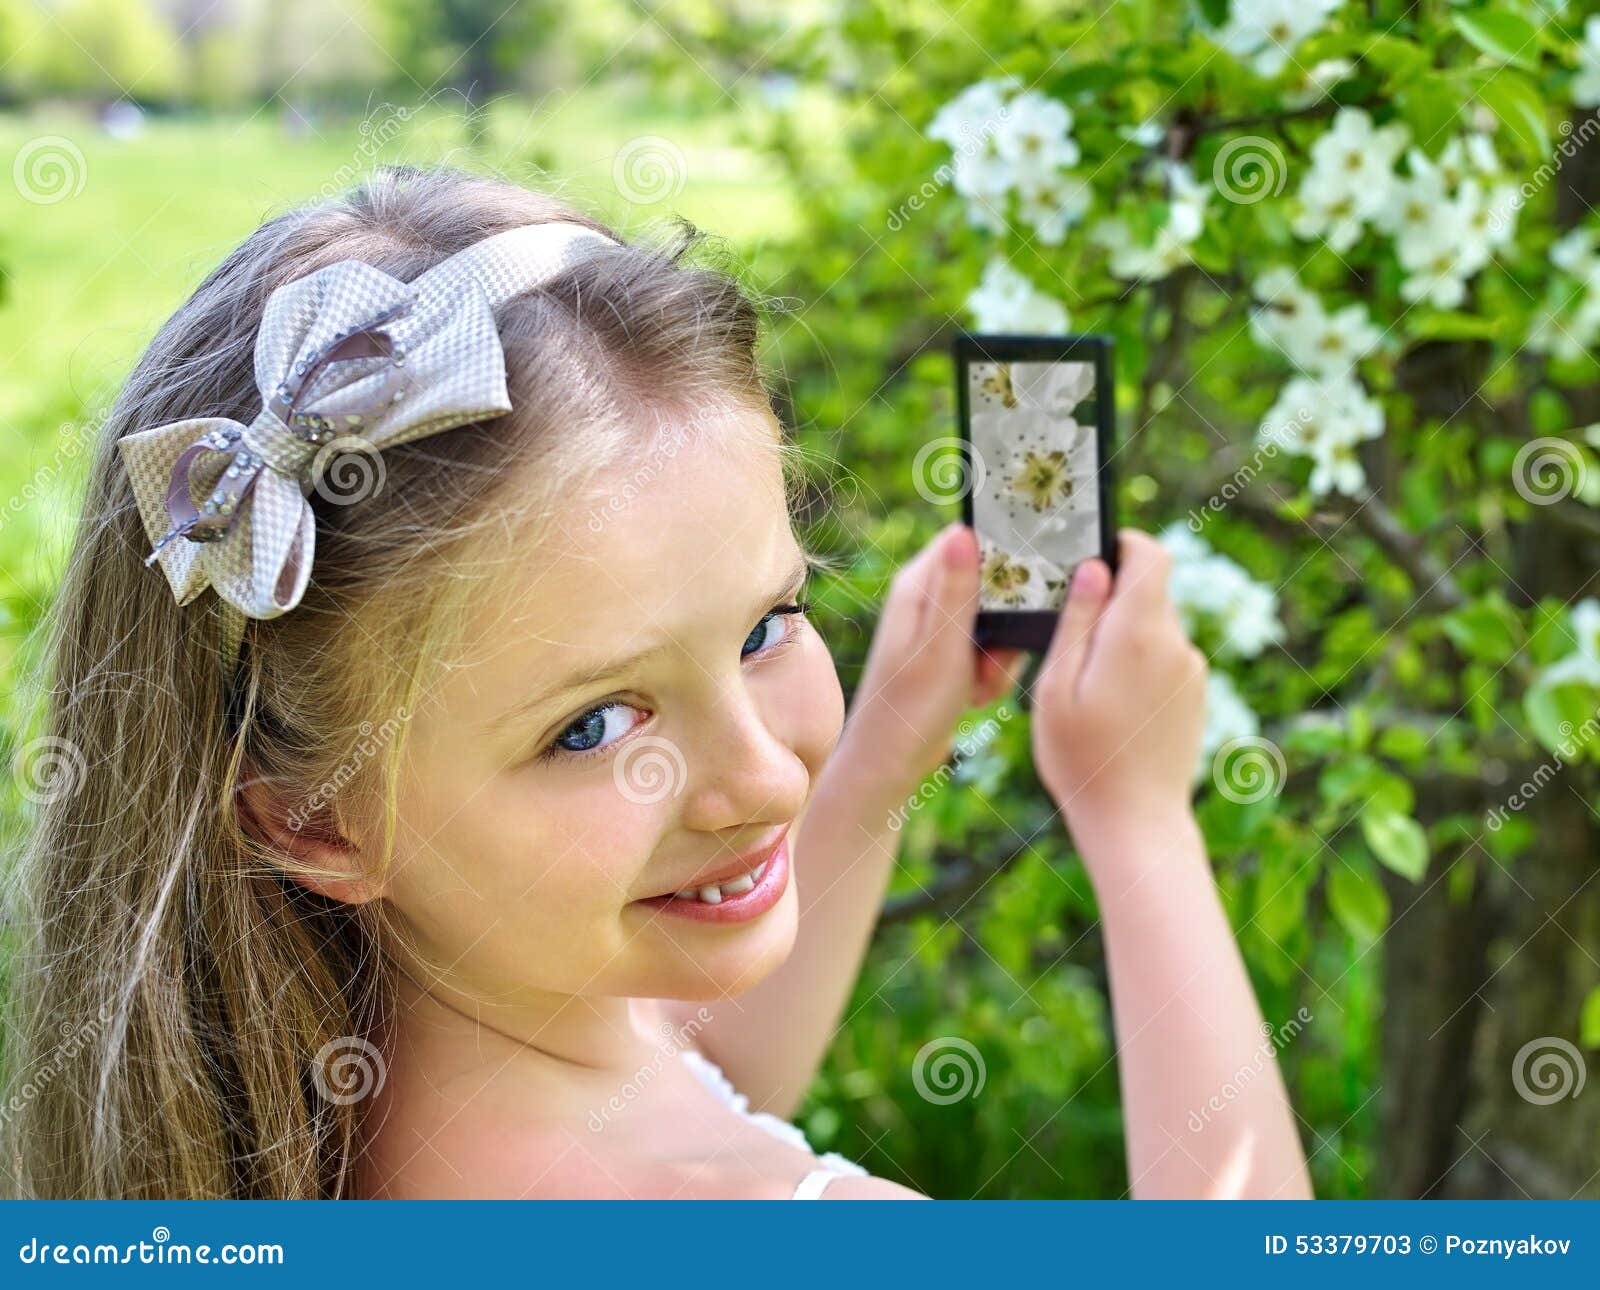 girl snapshot blossoming tree